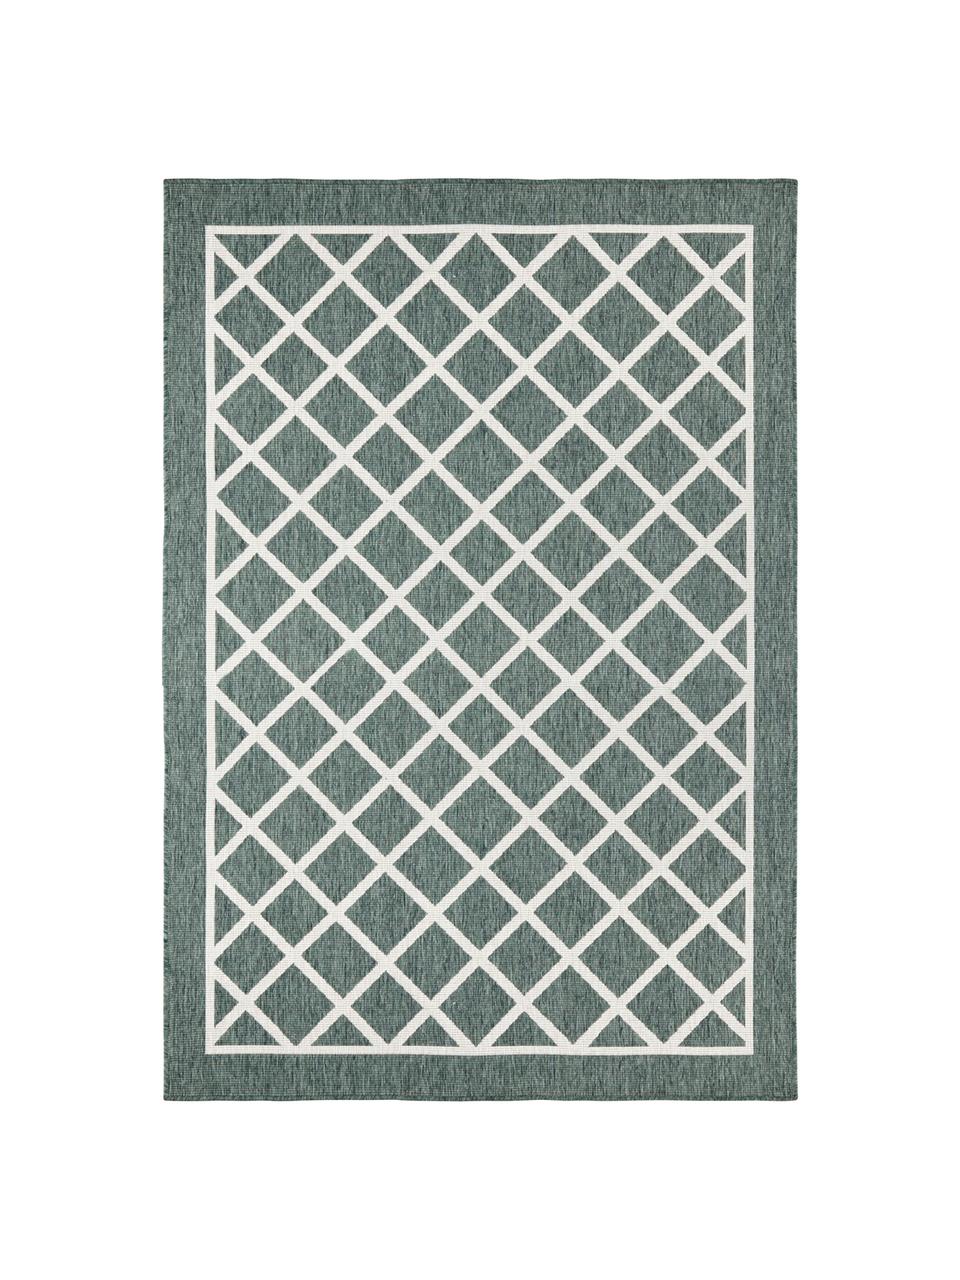 Vnitřní a venkovní oboustranný koberec s diamantovým vzorem Sydney, Zelená, krémová